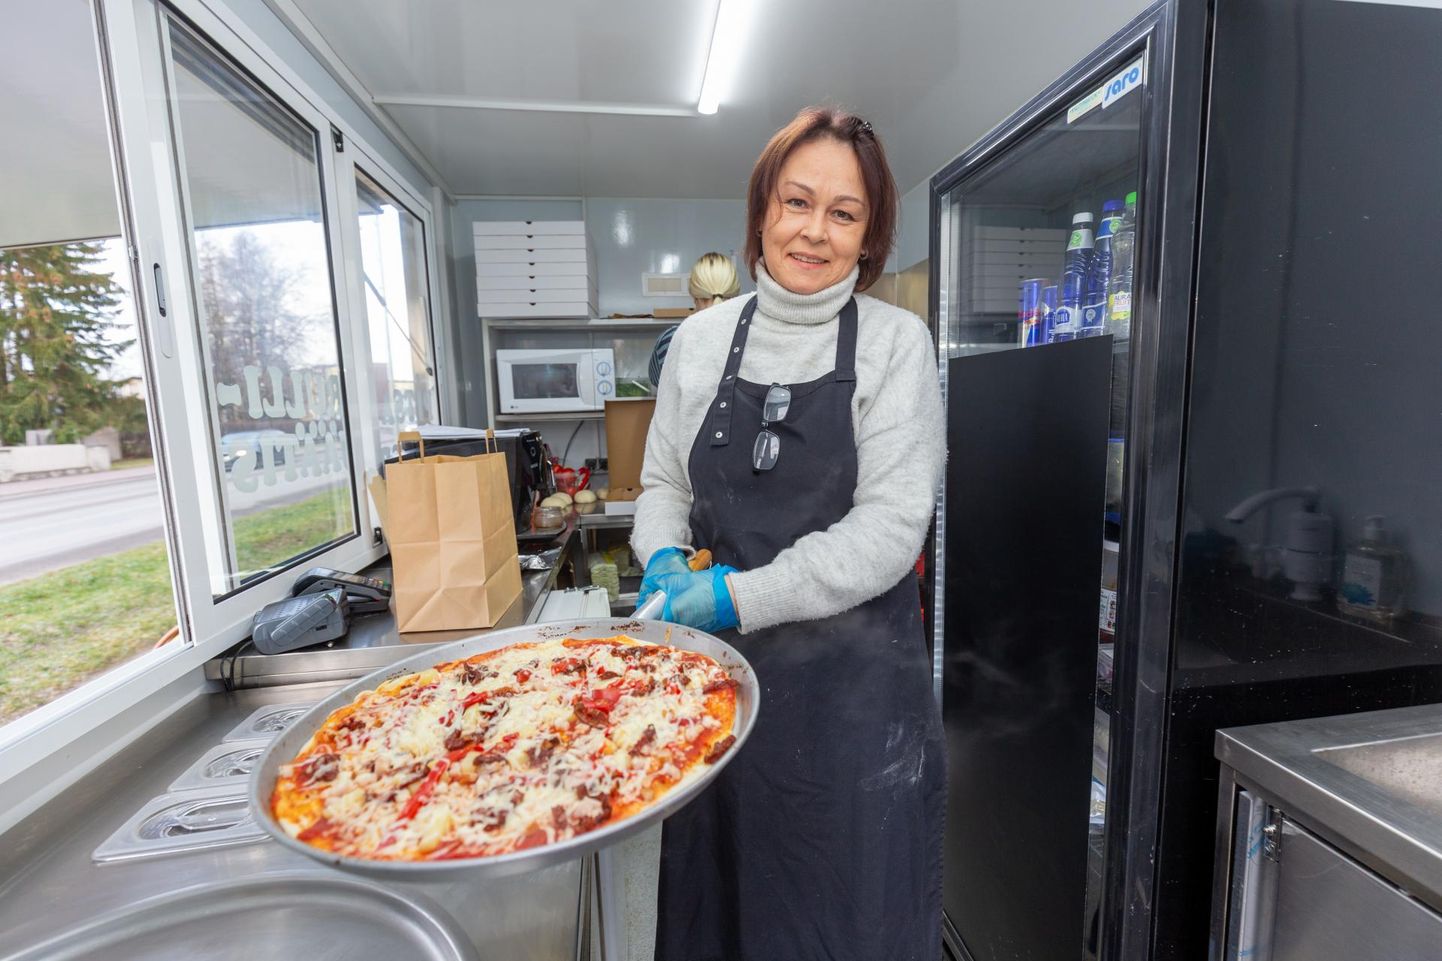 Paalalinnas toidukäru avanud Ruth Karmal on kavas kliente kostitada talv läbi. Pitsaahi kütab väikese ruumi kenasti ära.